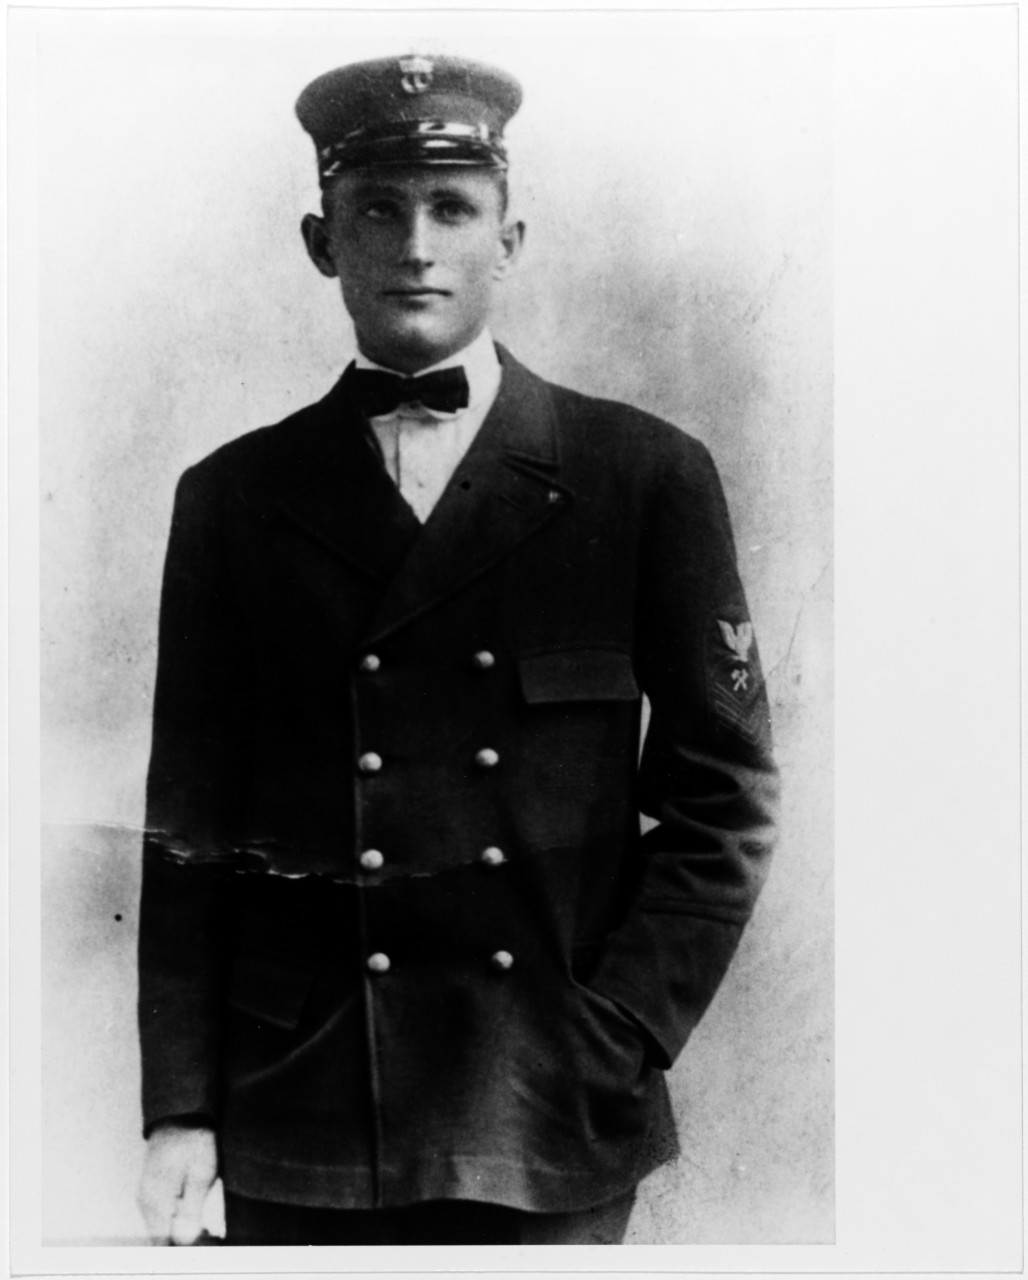 Chief M. Gans Bratton, U.S. Navy